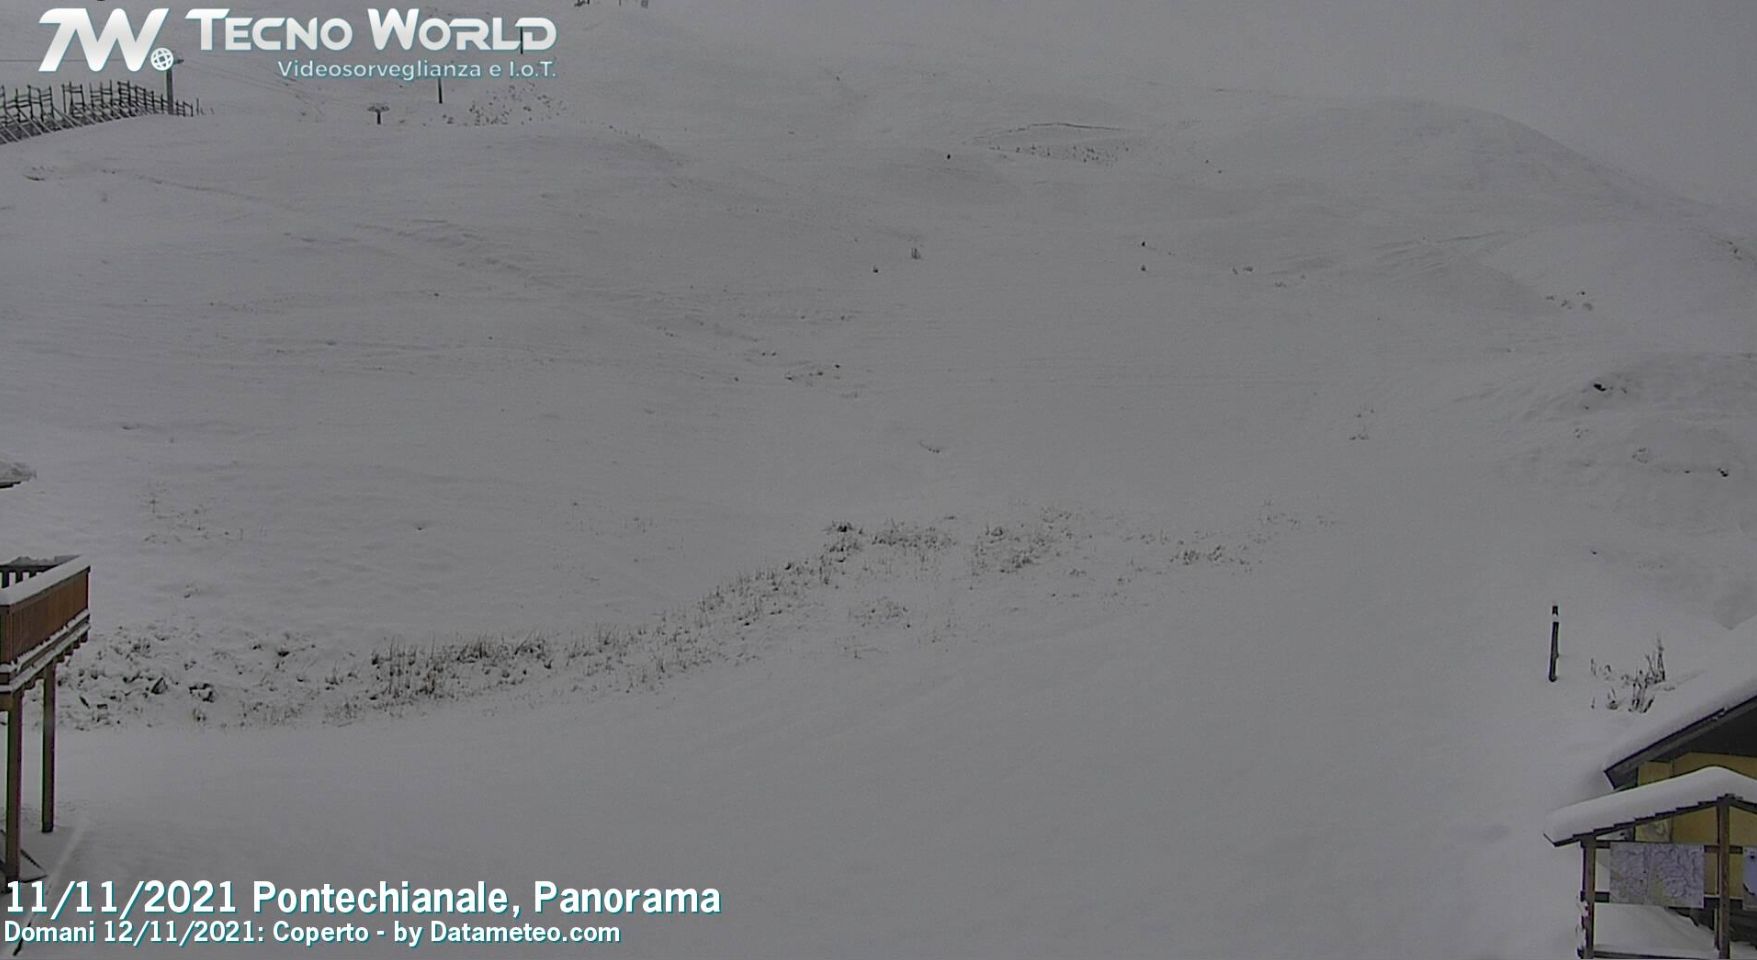 Een mooie laag verse sneeuw in Pontechianale gisterochtend